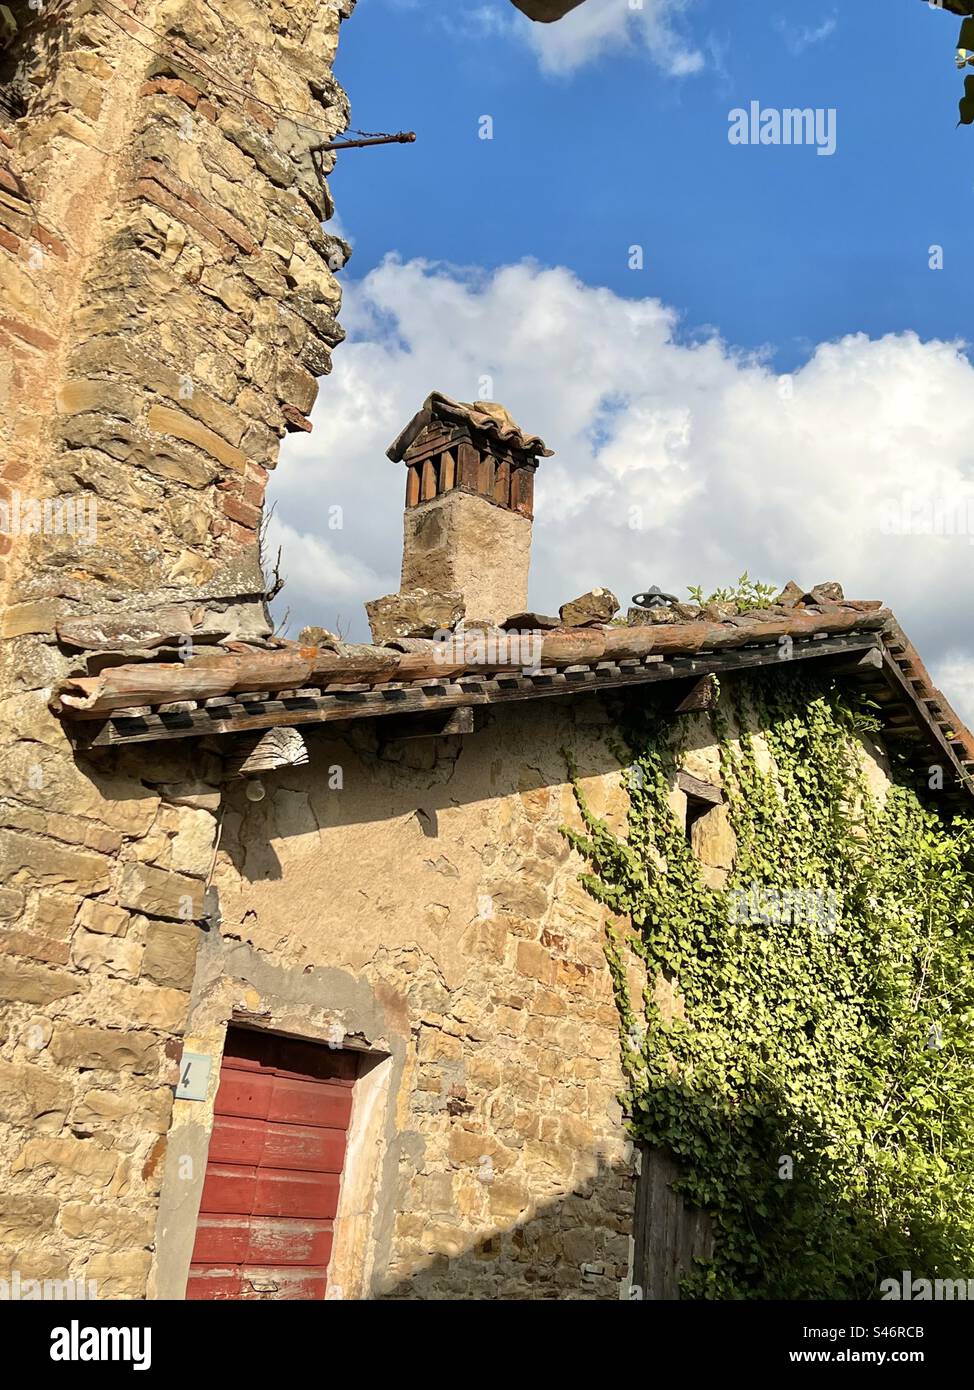 A rural stone building in the small village of Monfestino, Serramazzoni, Italy Stock Photo